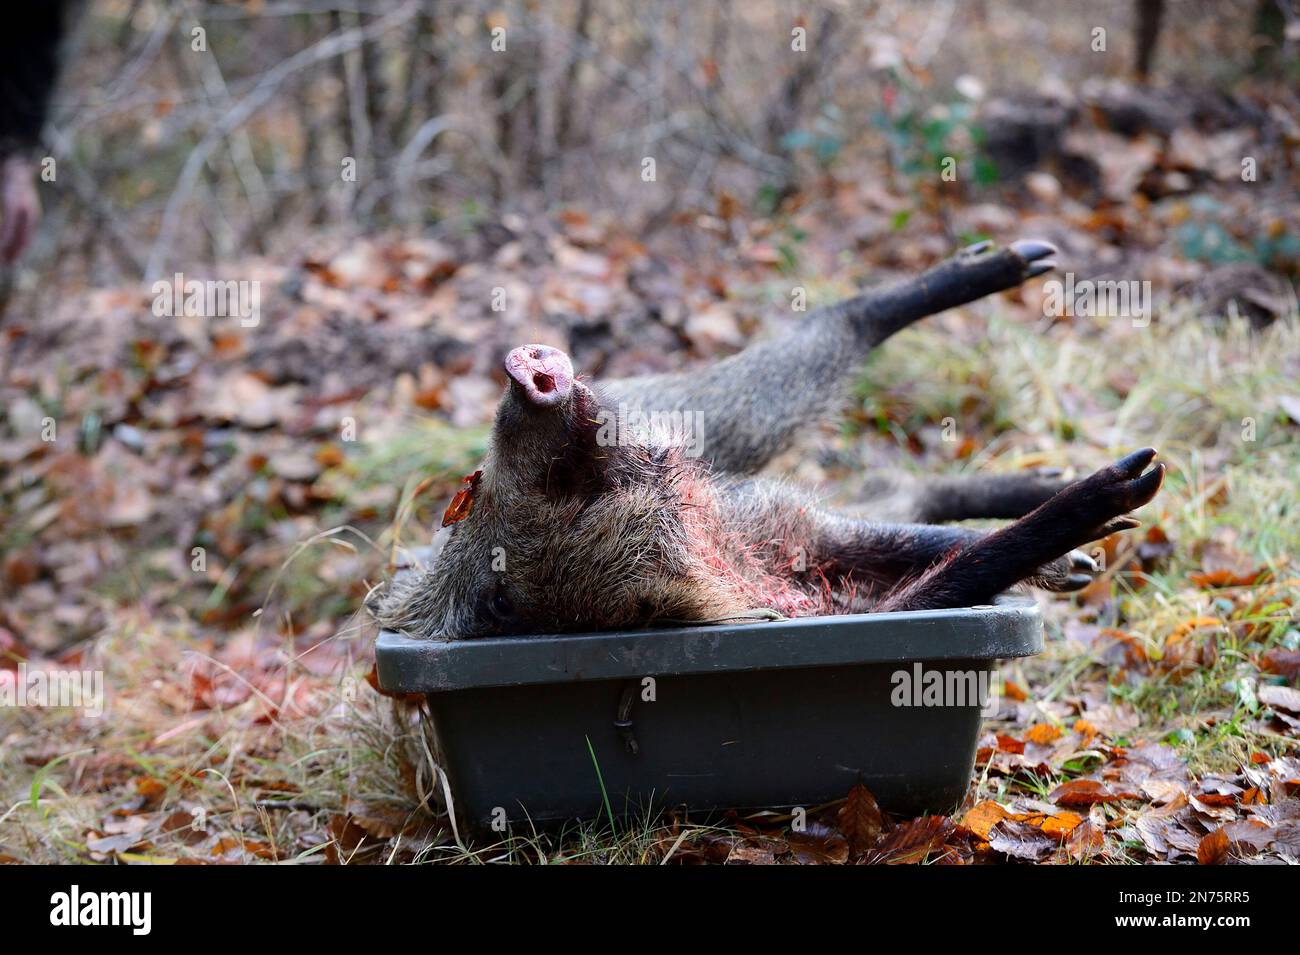 Driven hunt in Stadtprozelten, killed wild boar Stock Photo